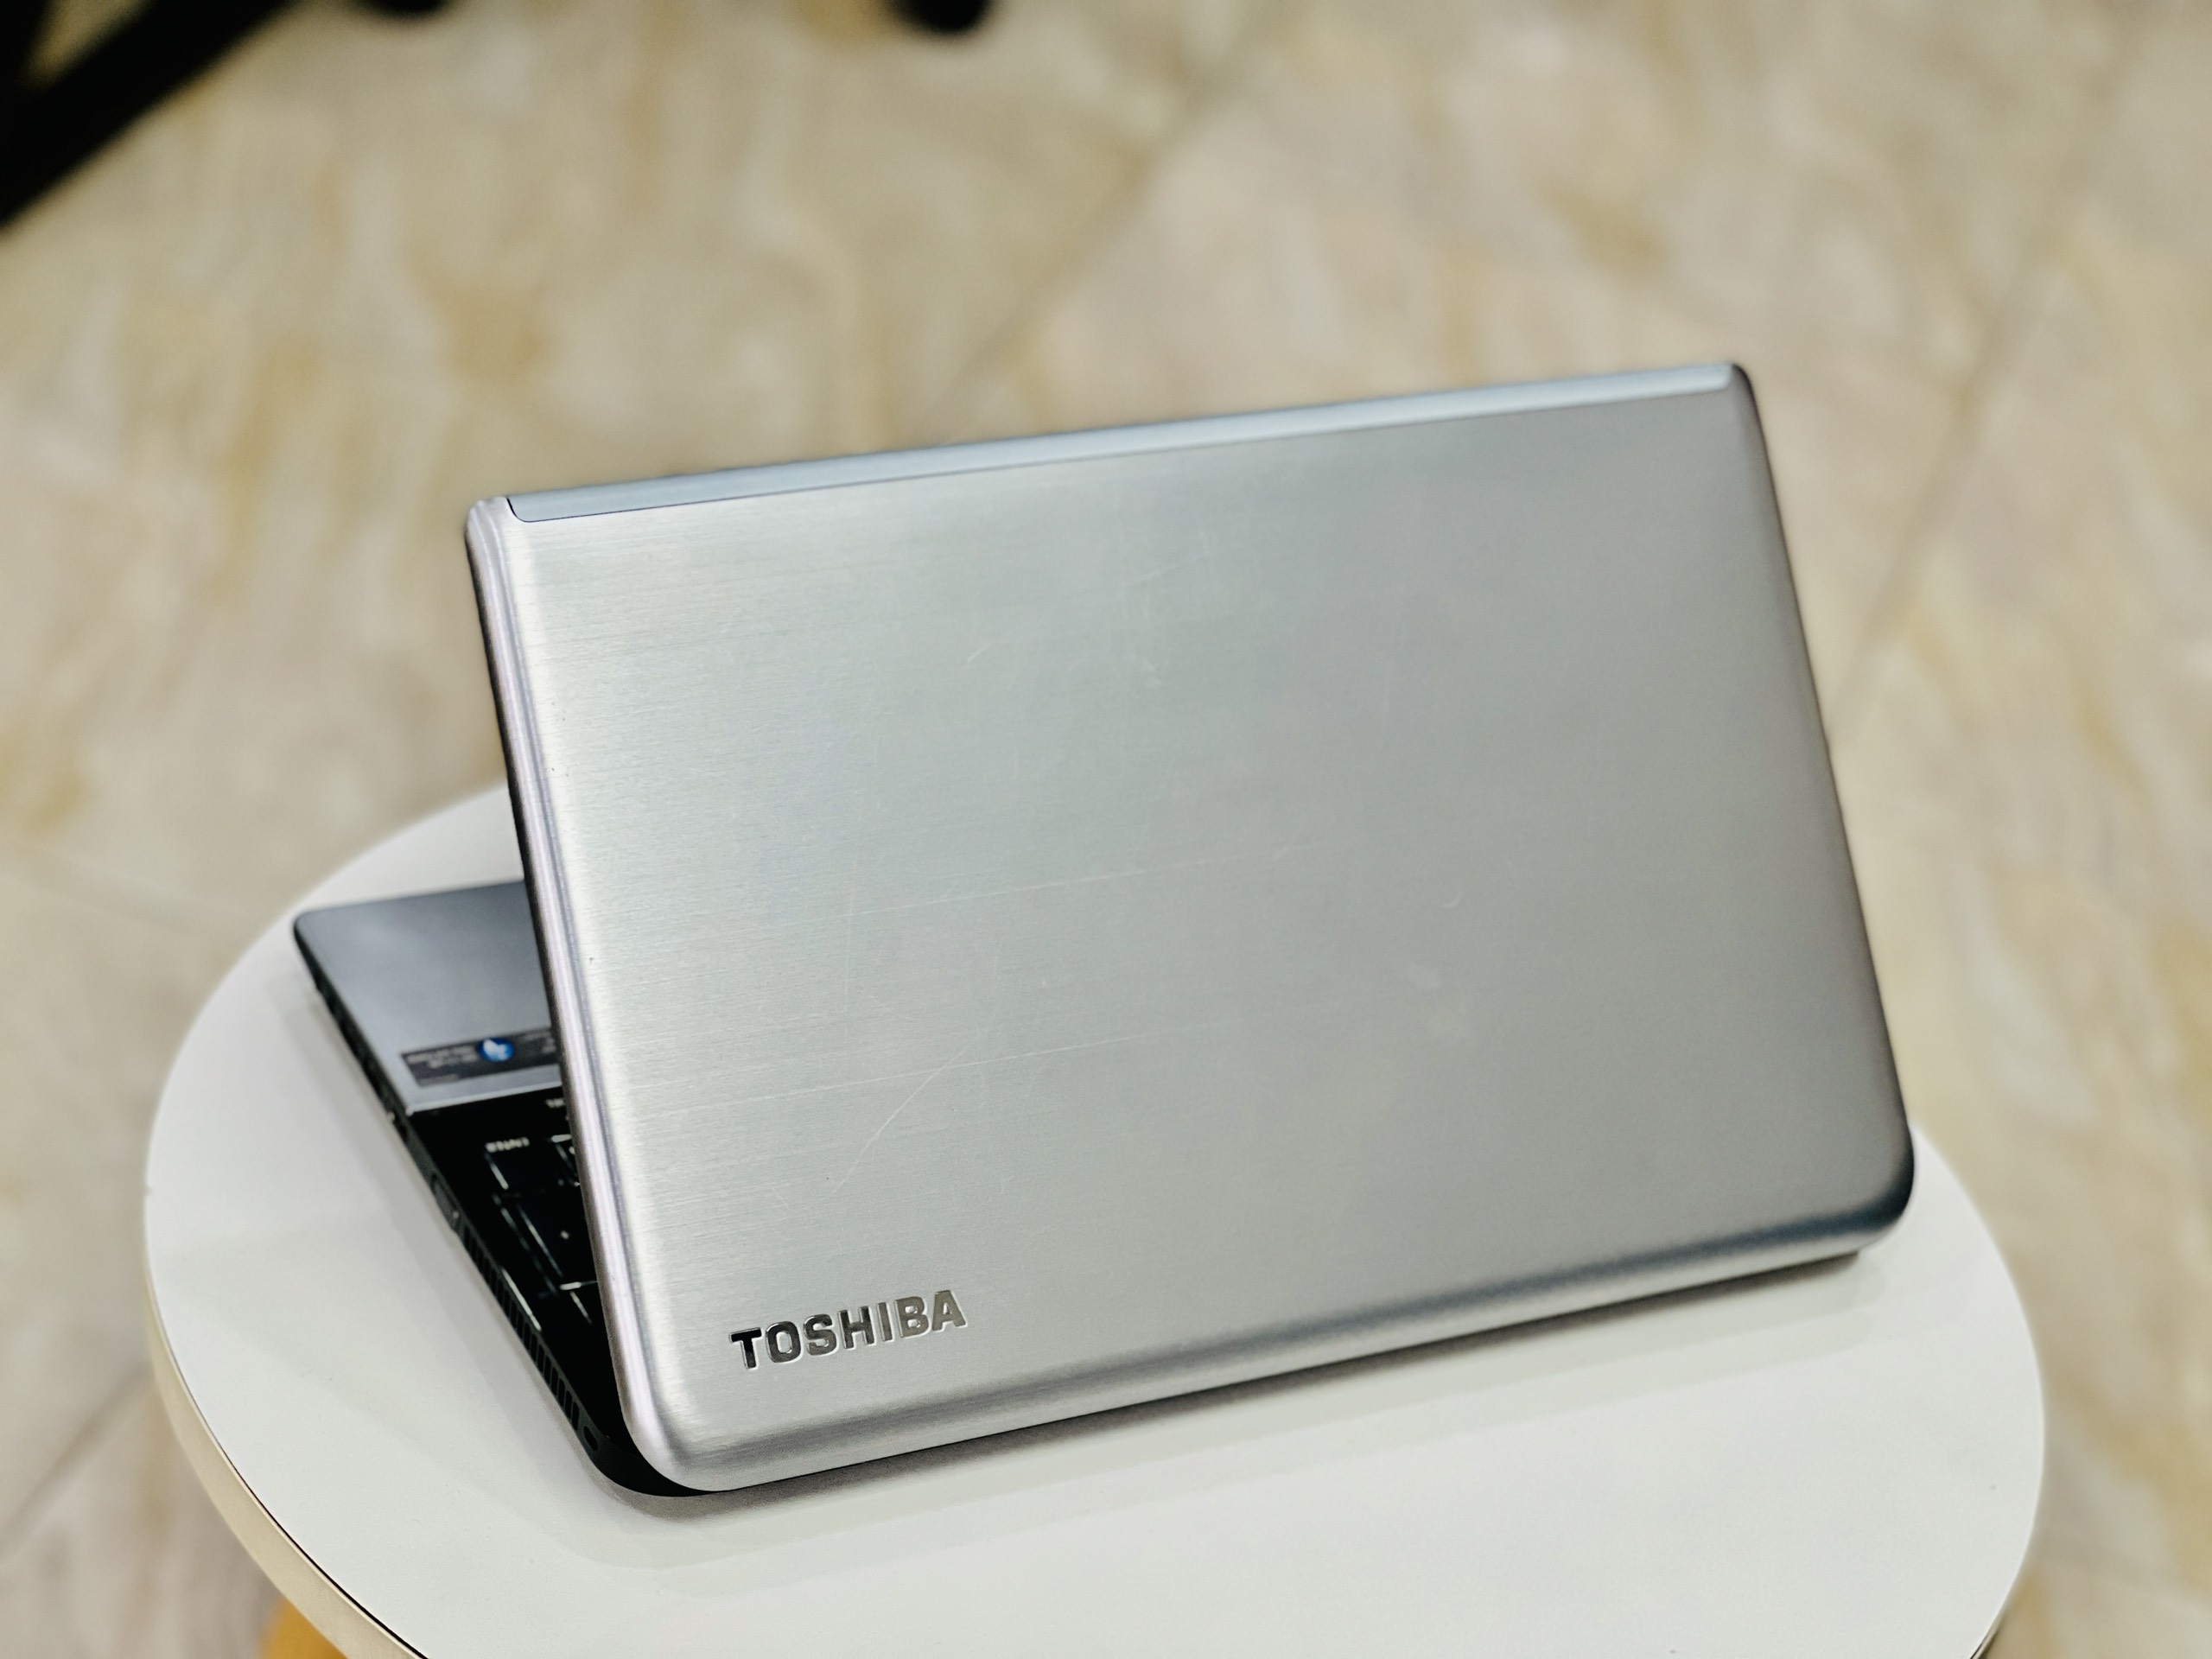 Laptop Cũ 99% Toshiba S55 i7 4700QM/ Ram8G/ SSD256/ Vga HD4600/ Hỗ Trợ Game Đồ Họa/ 15.6inch/ Giá rẻ3